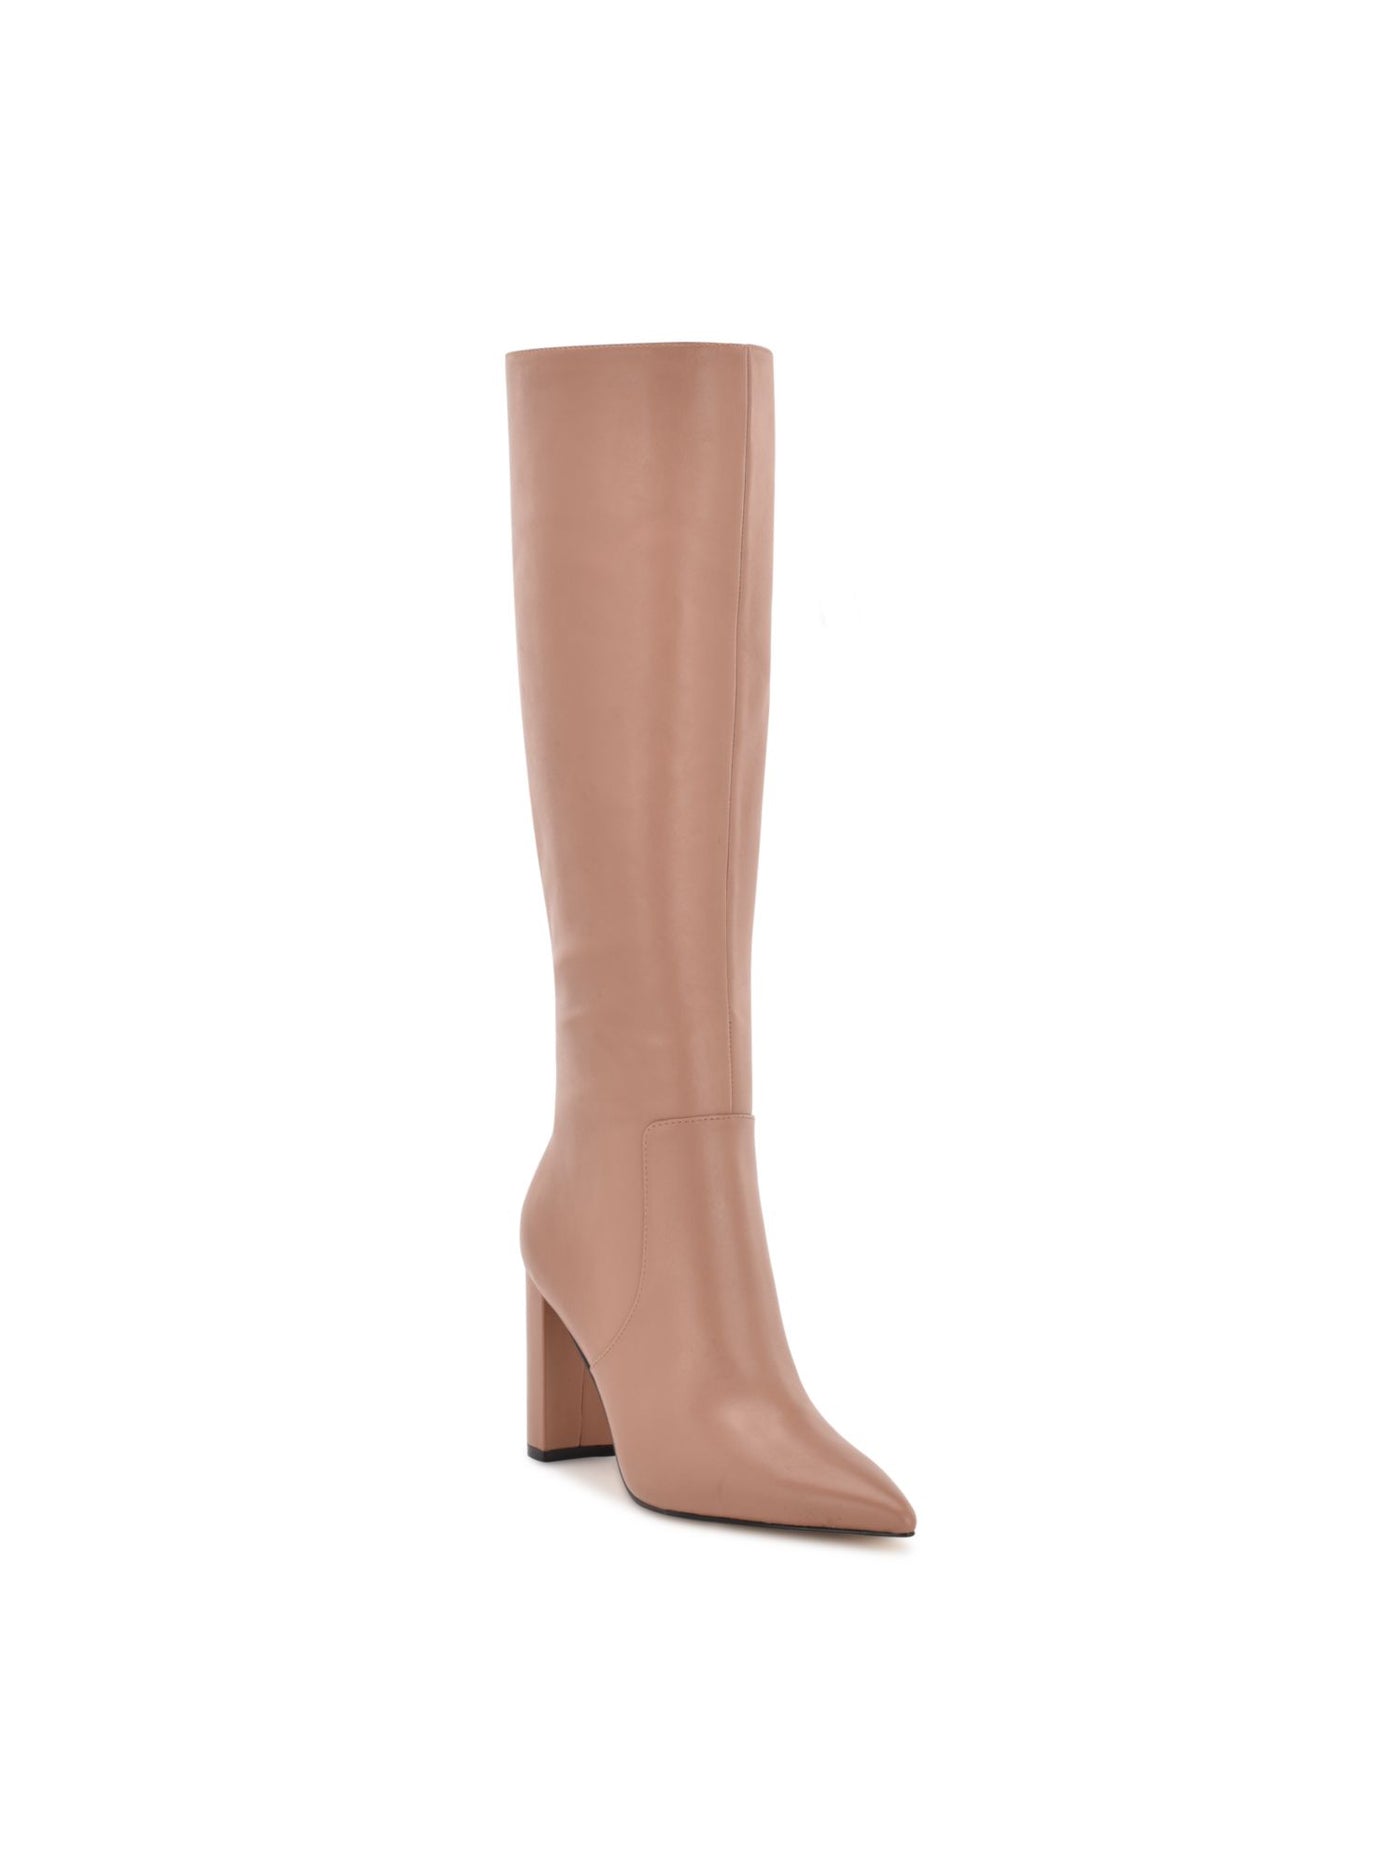 NINE WEST Womens Beige Comfort Danee Pointy Toe Block Heel Zip-Up Leather Boots Shoes 8.5 M WC